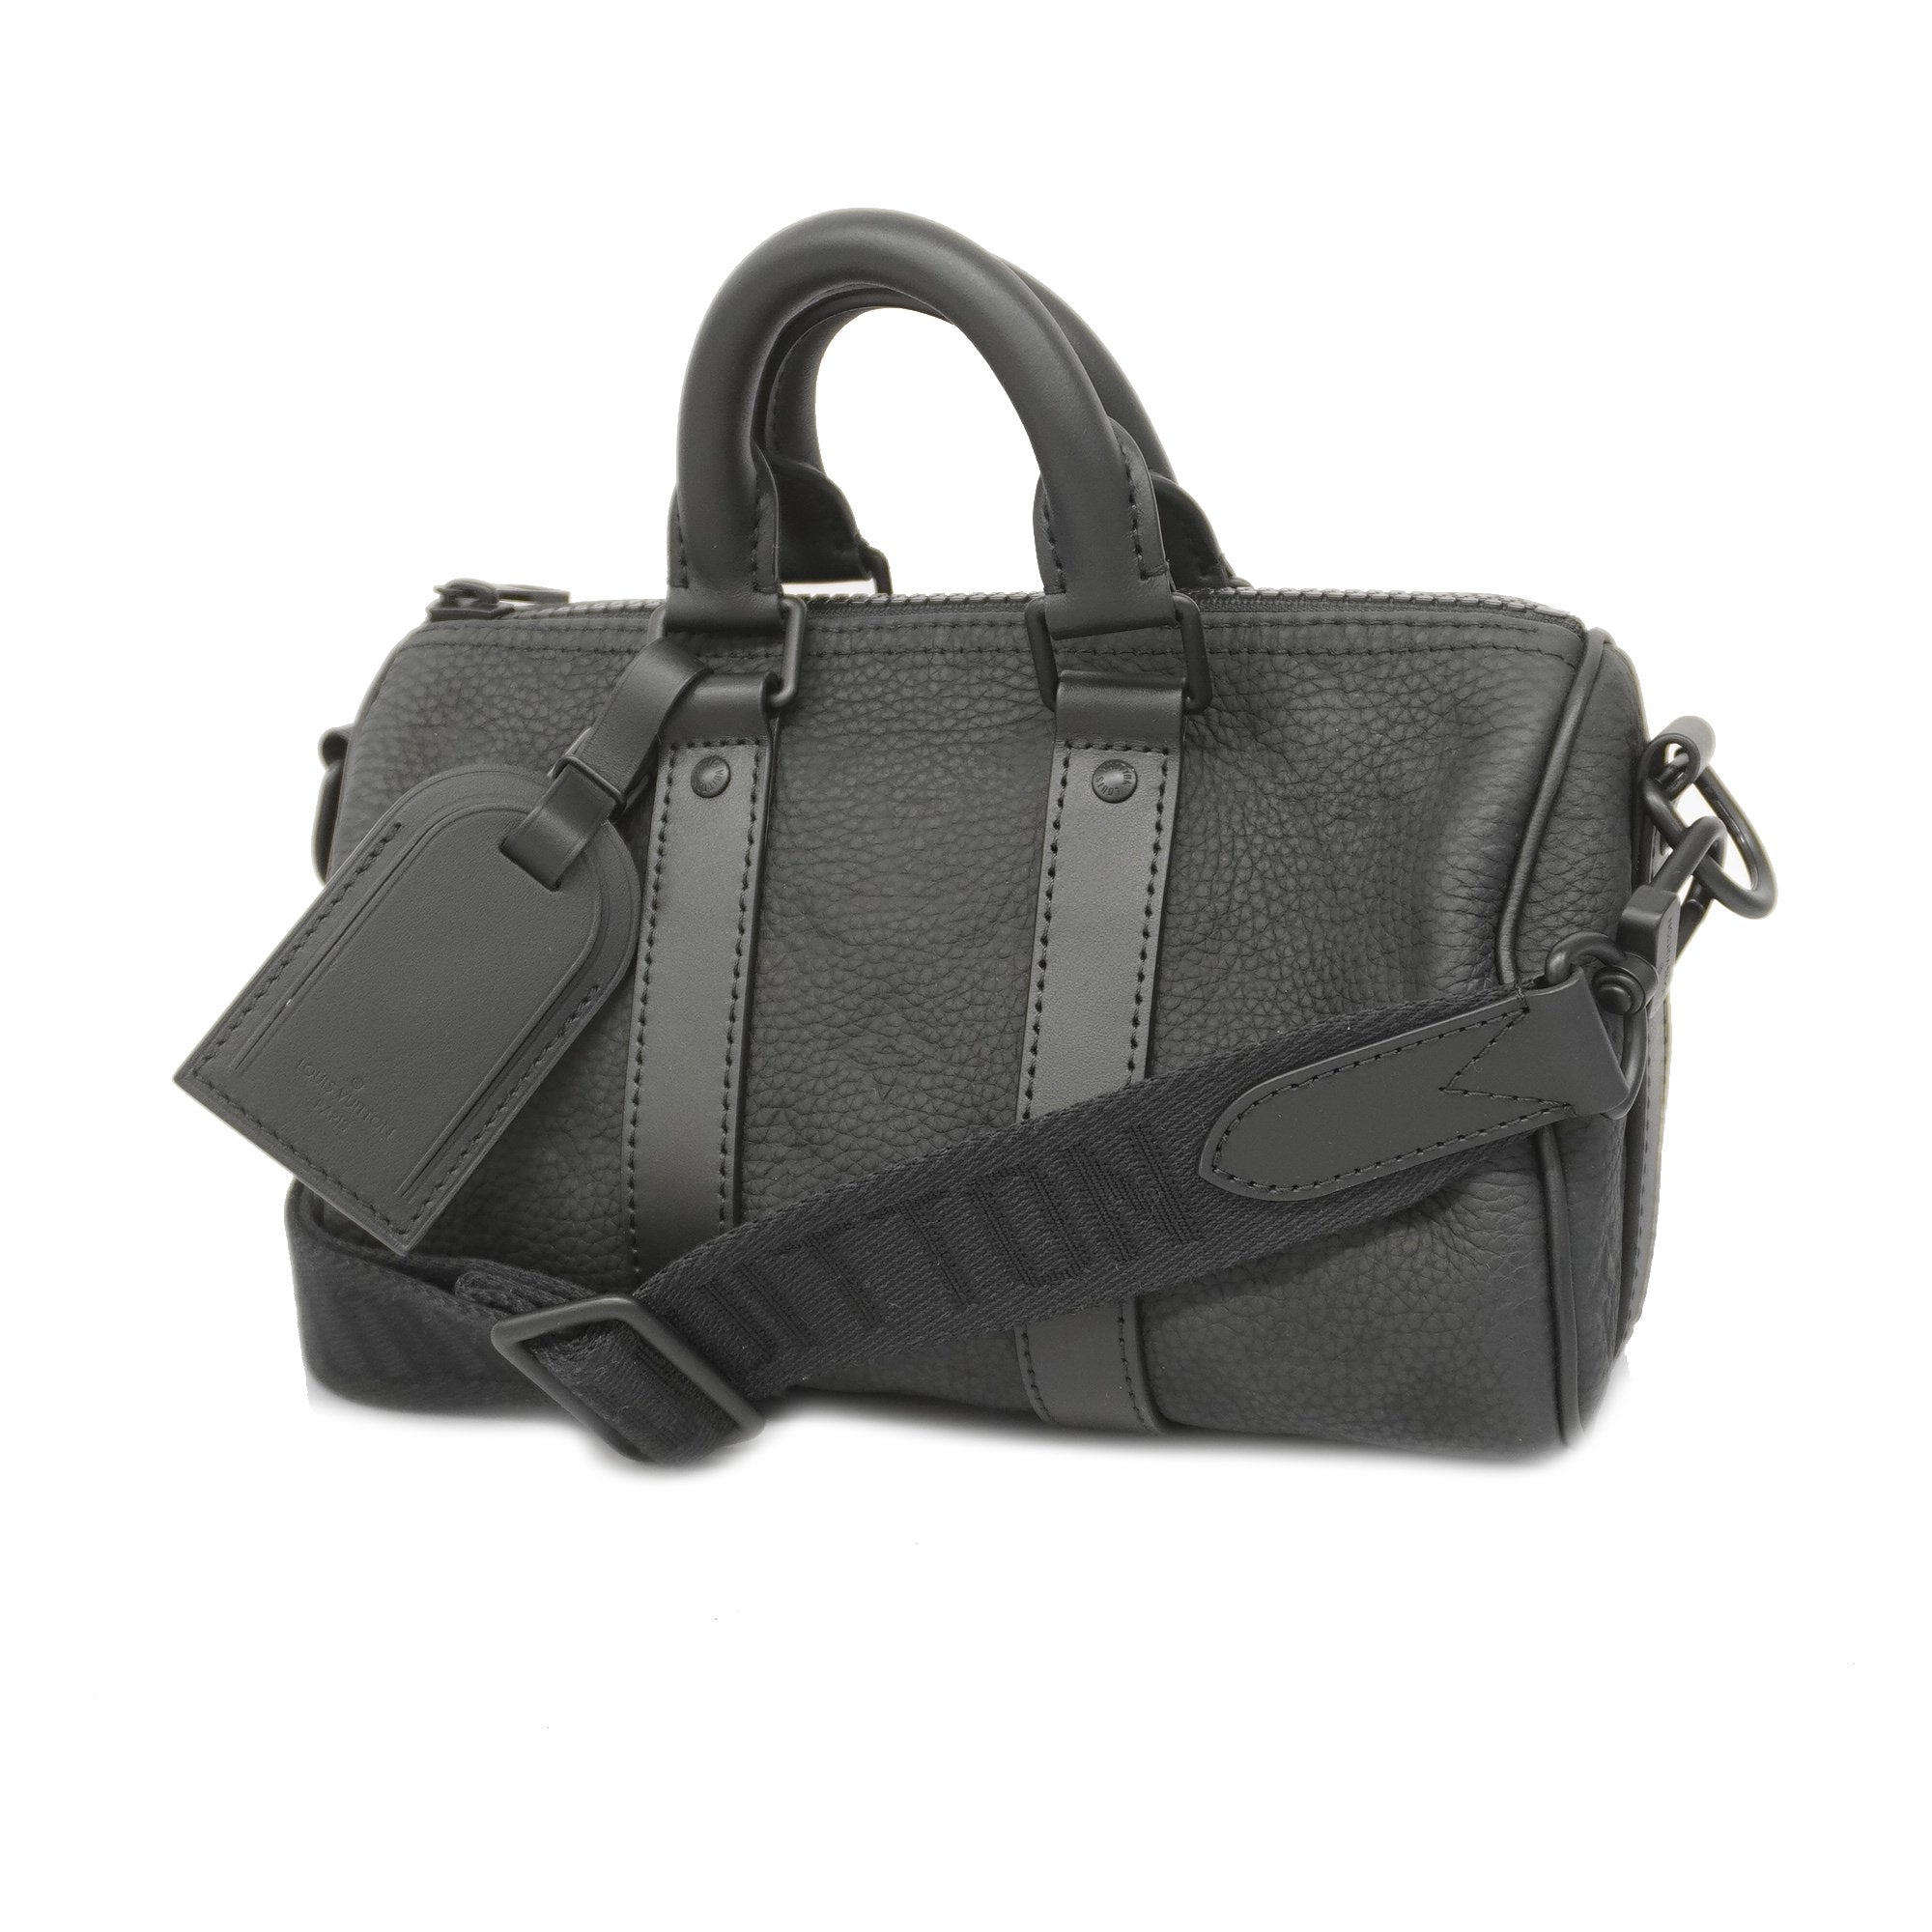 Louis Vuitton M20900 Keepall Bandoulière 25, Black, One Size